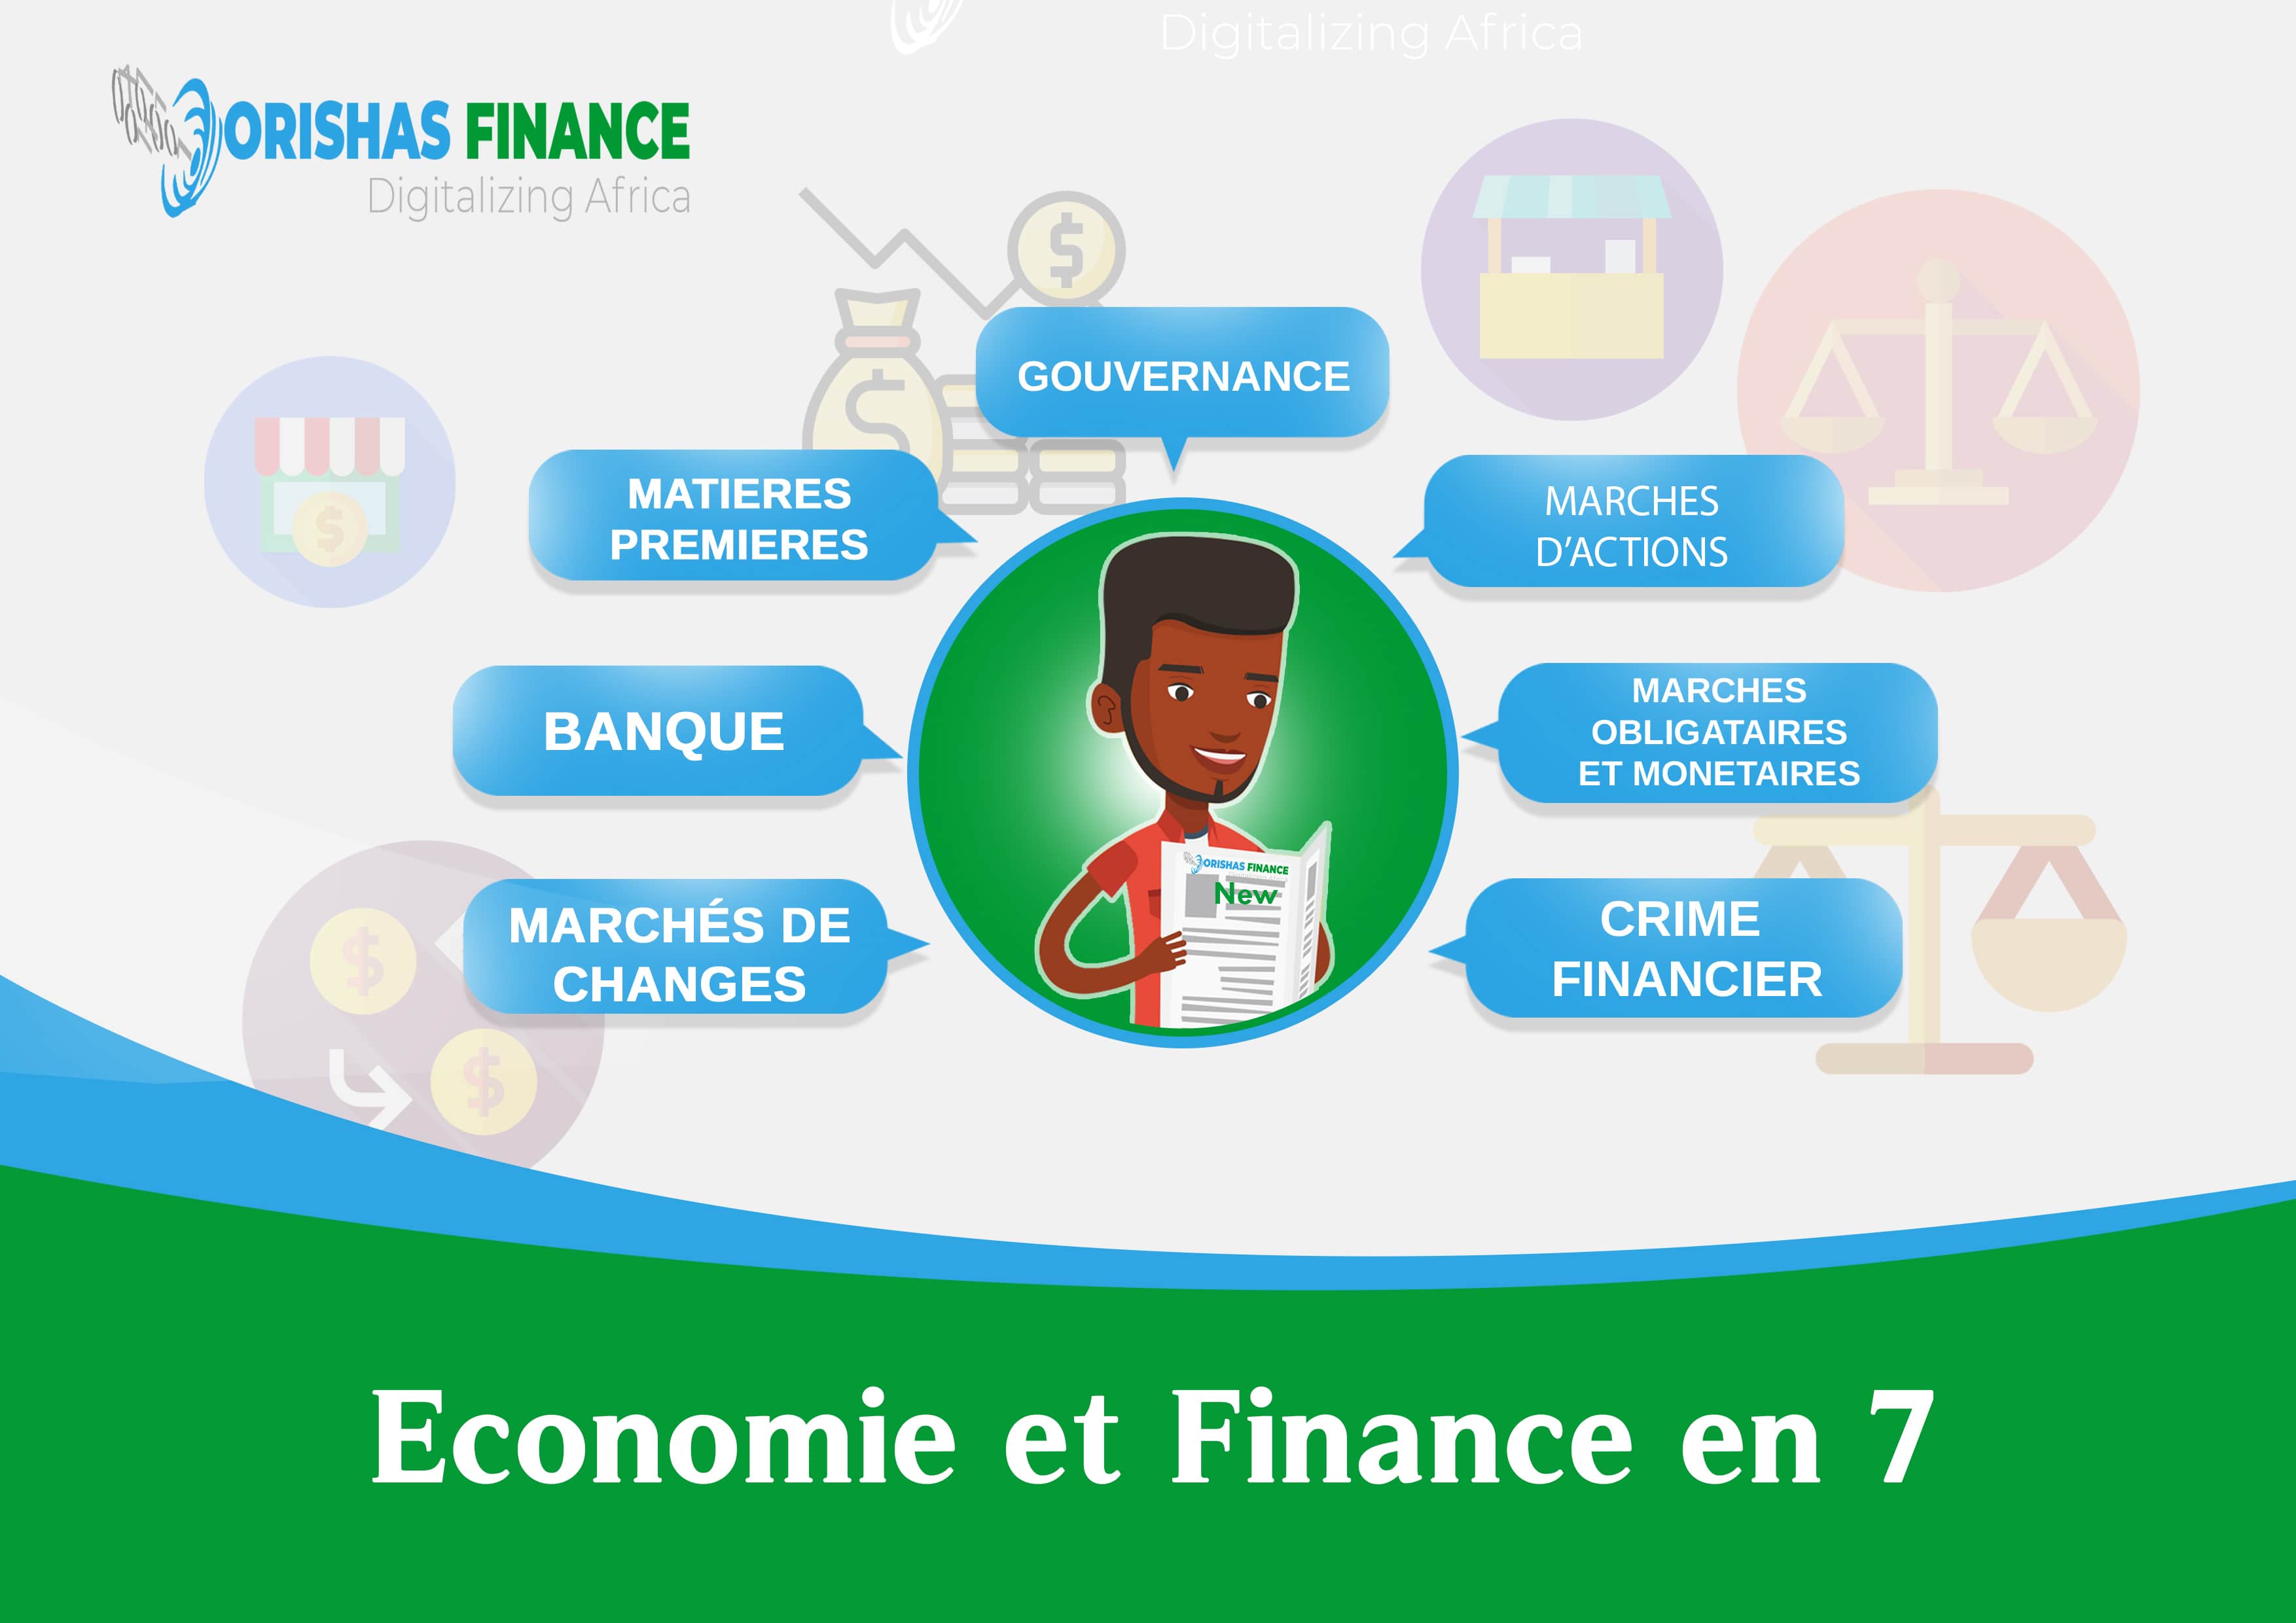  Economie et finance en 7 du 26 au 30 Avril 2021 